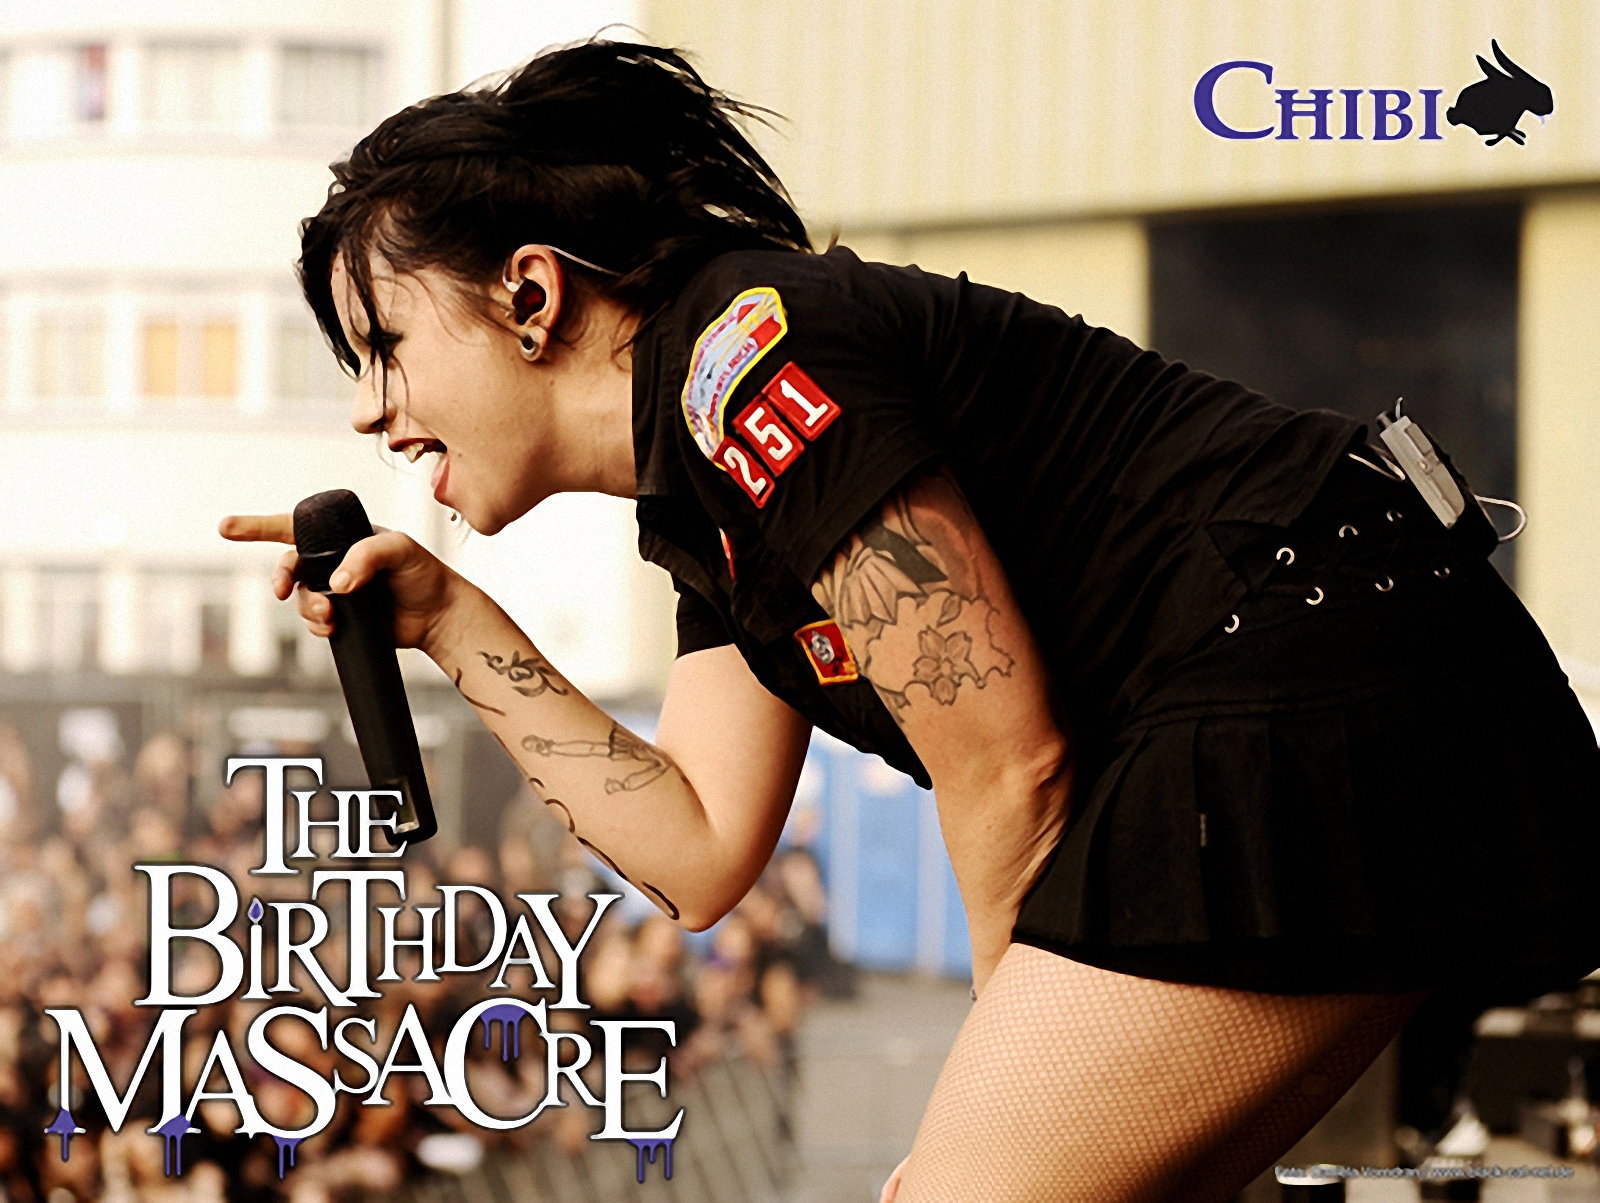 The Birthday Massacre Chibi